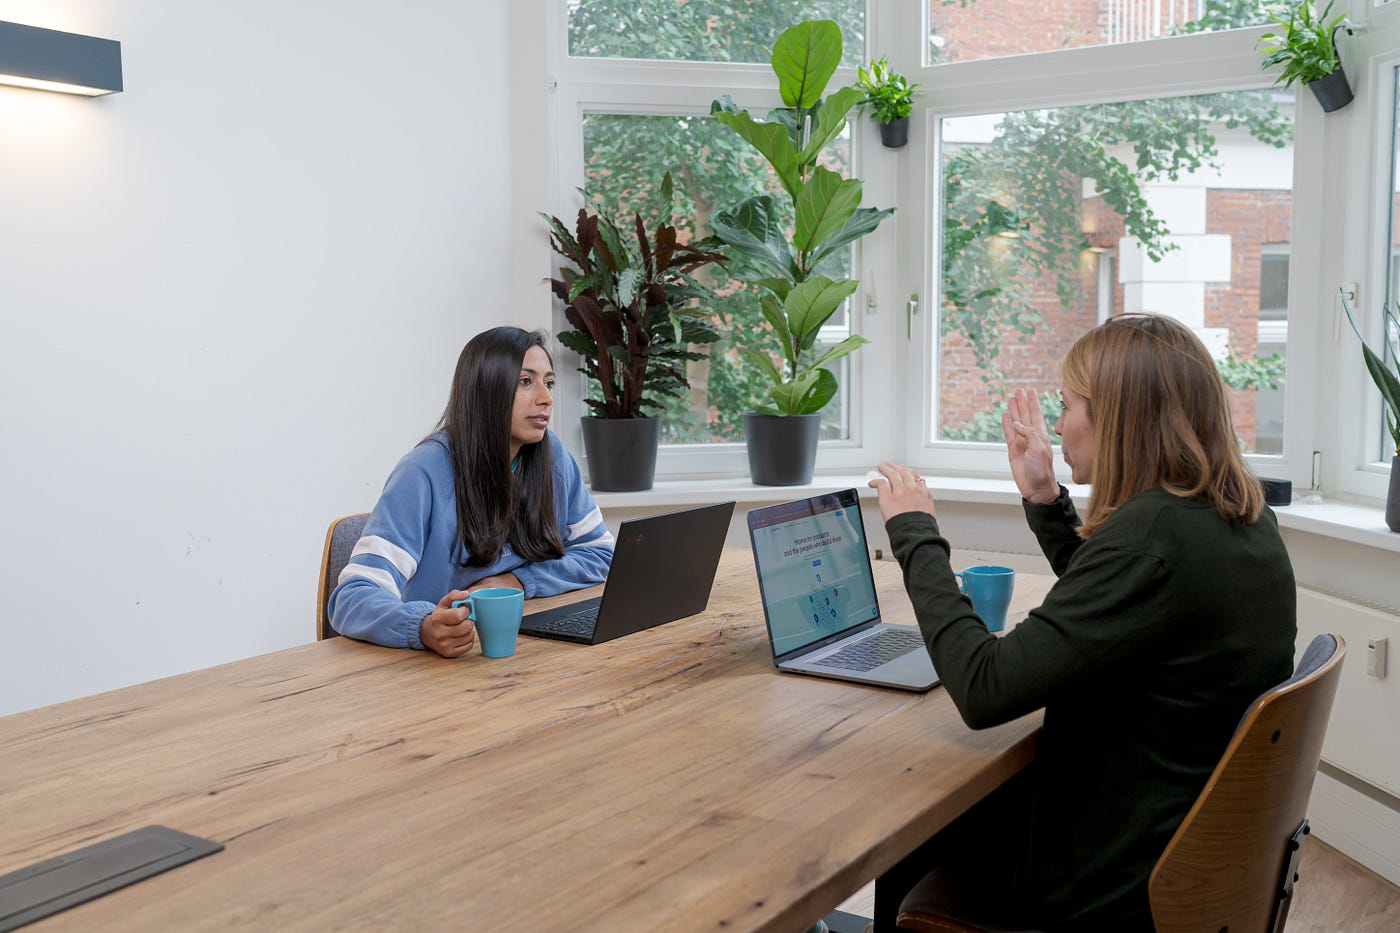 Foto entrevista con el usuario.  Dos mujeres están sentadas en una mesa con computadoras portátiles y hablando.